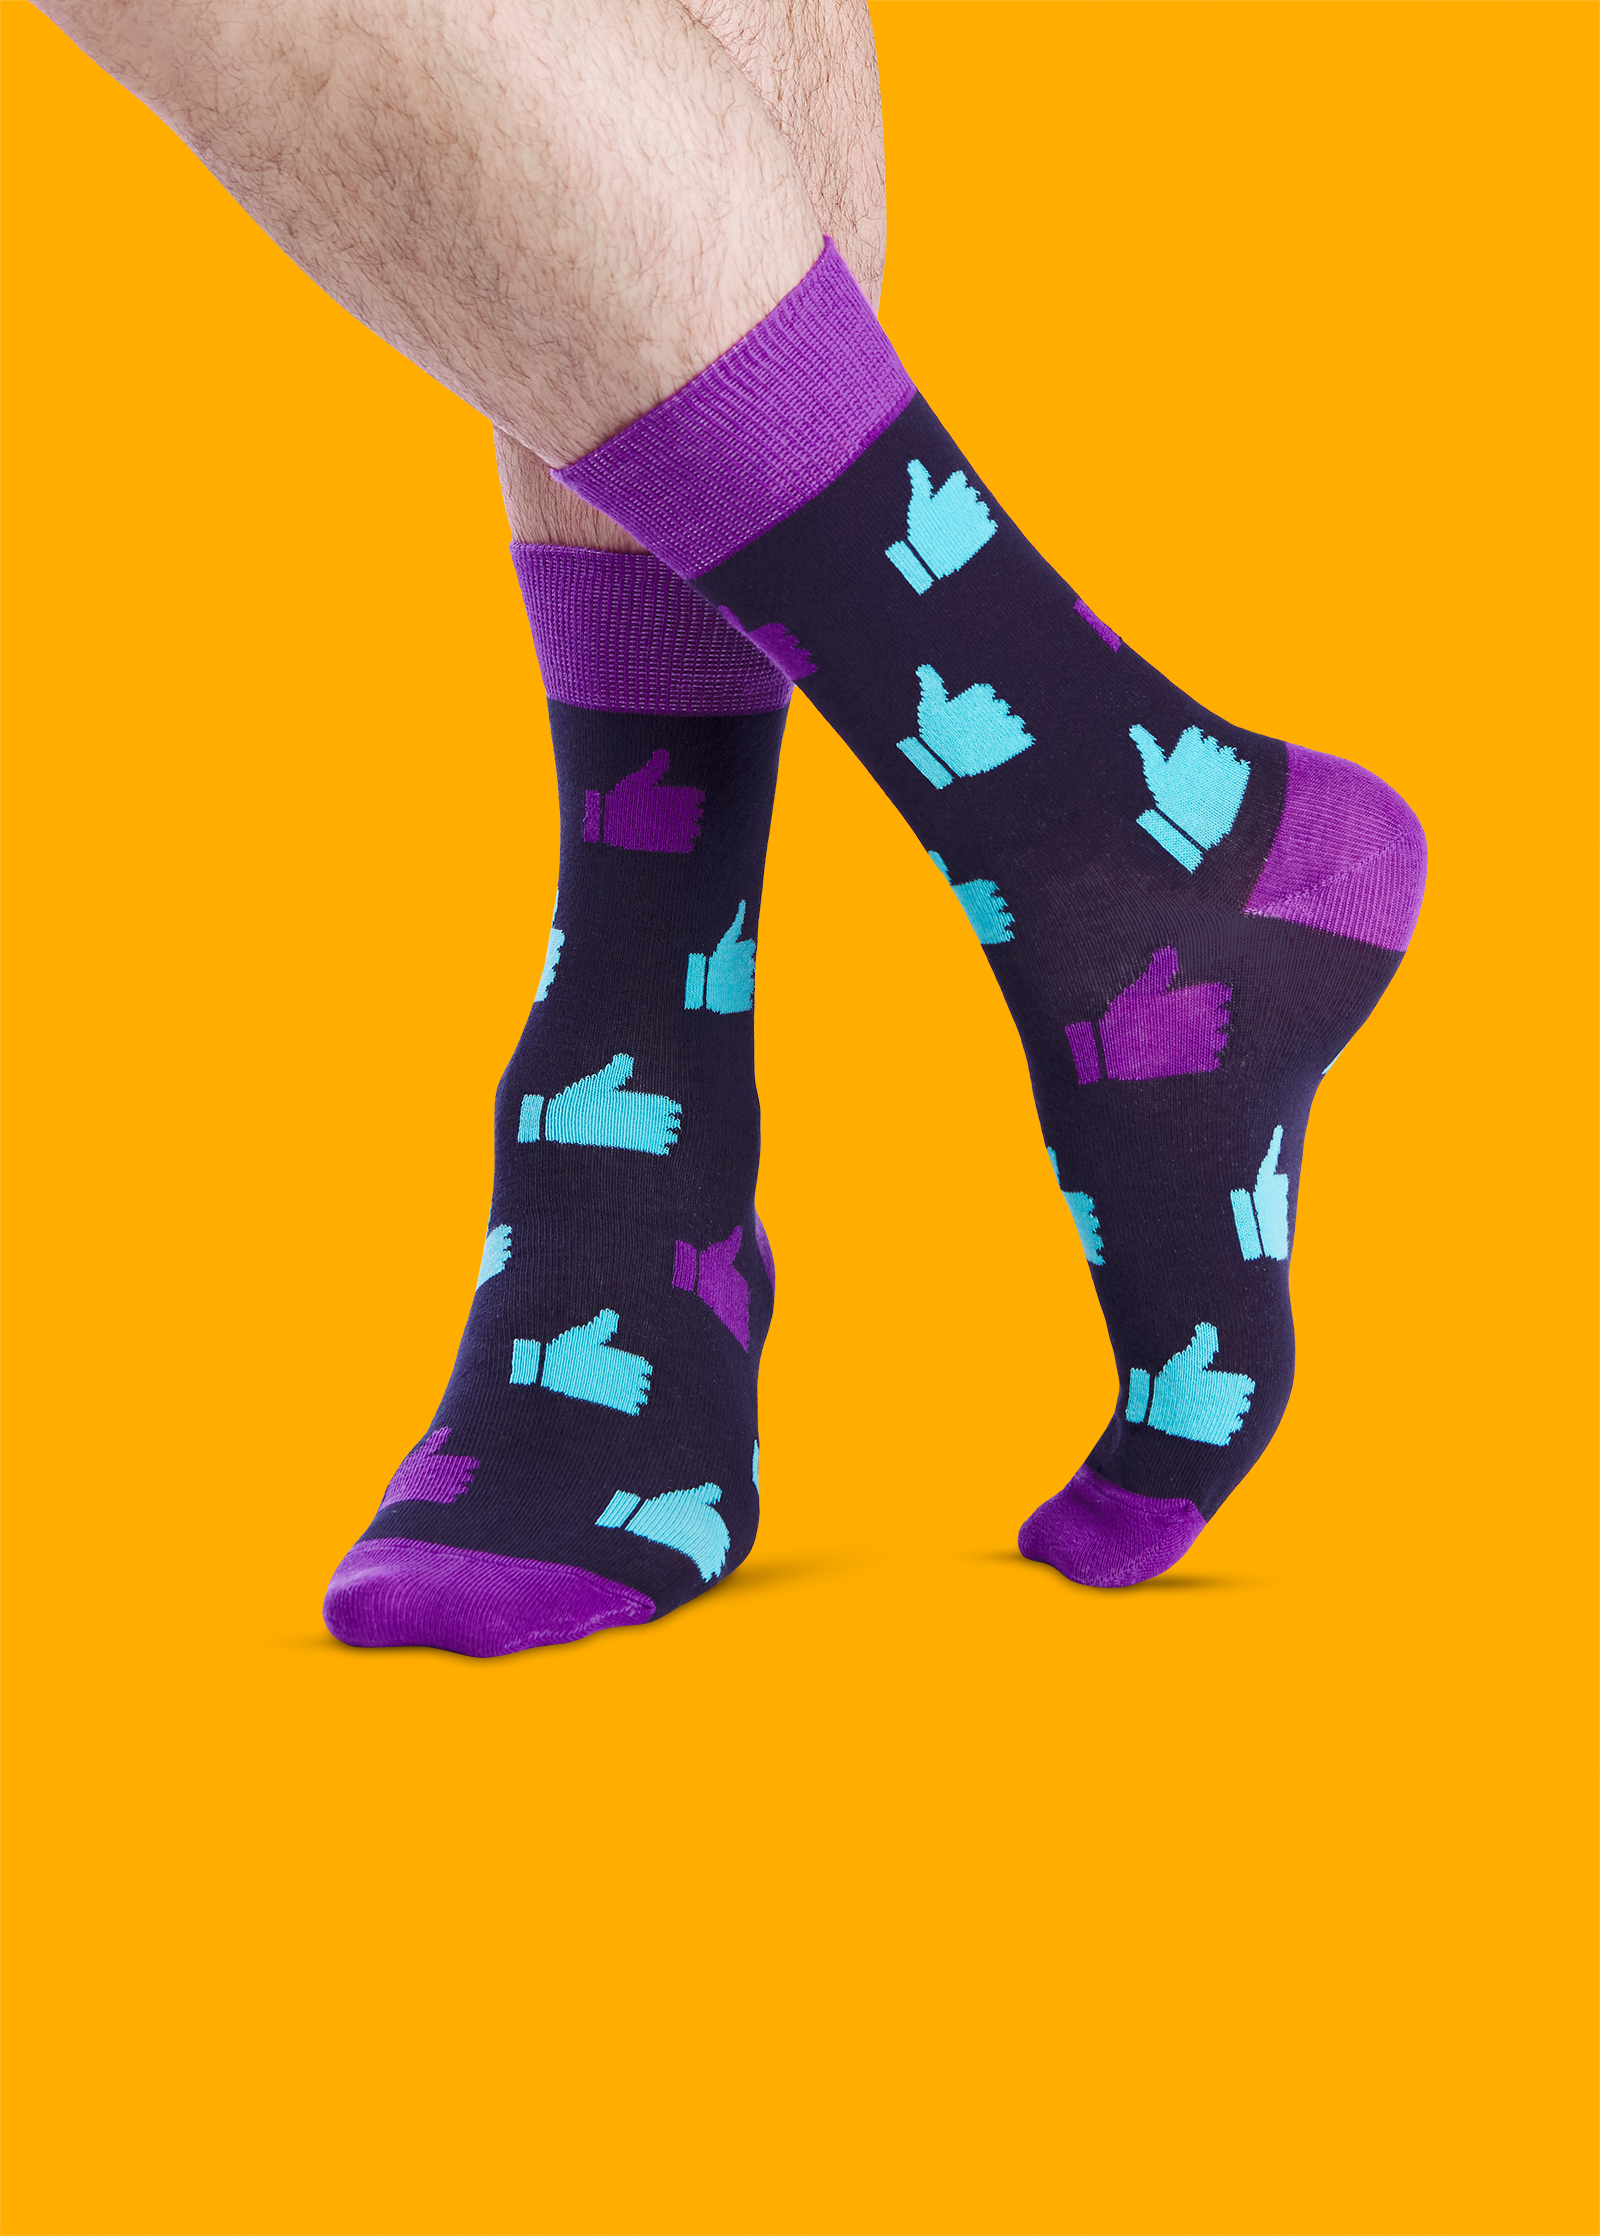 Носки INWIN men. Носки Фанни Сокс. Разноцветные носки. Необычные носки женские. Купить носки в новосибирске